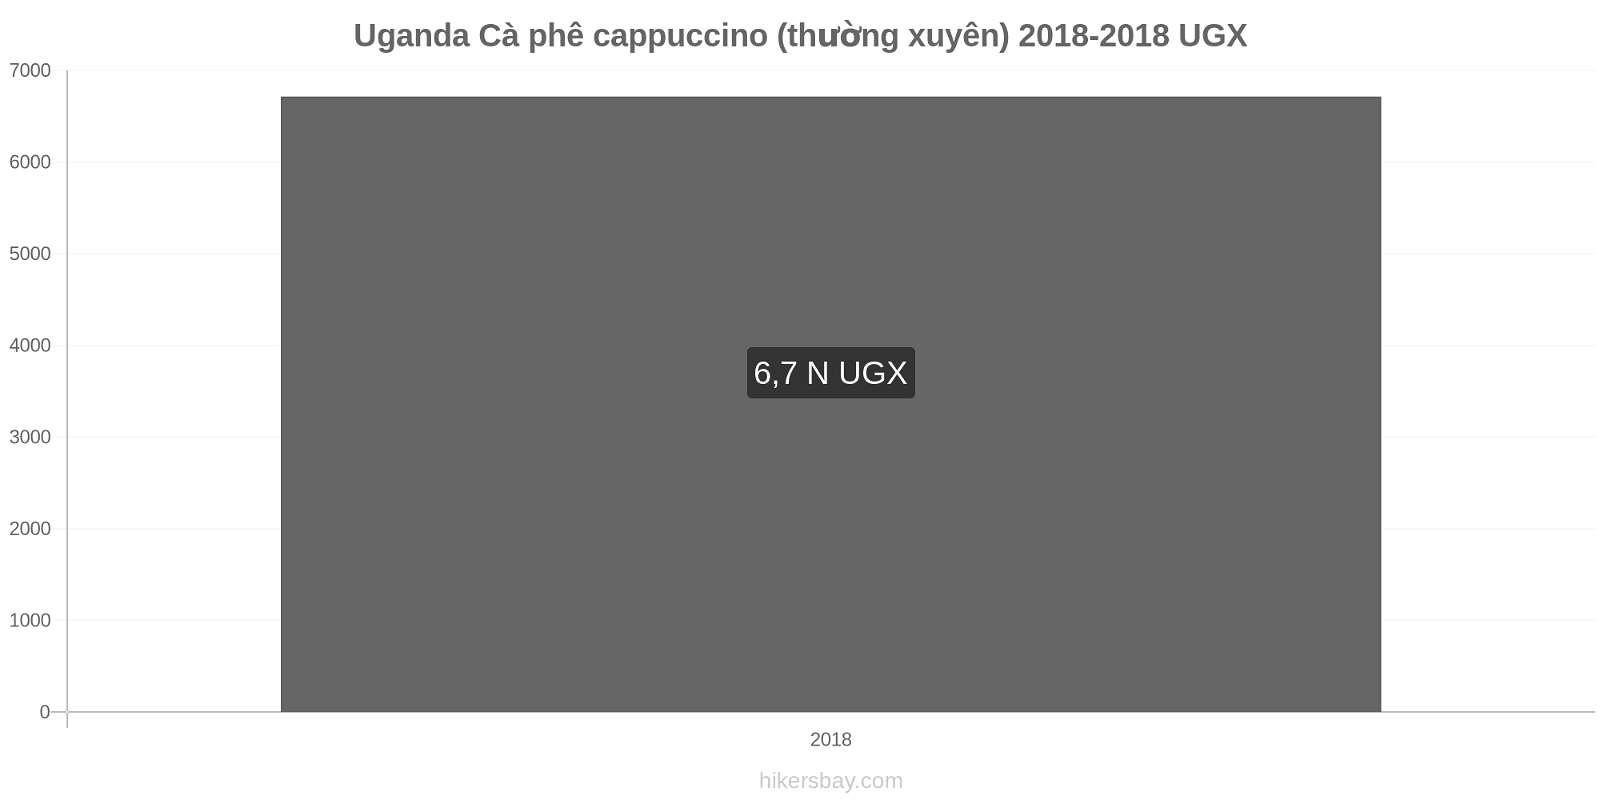 Uganda thay đổi giá cả Cà phê cappuccino hikersbay.com